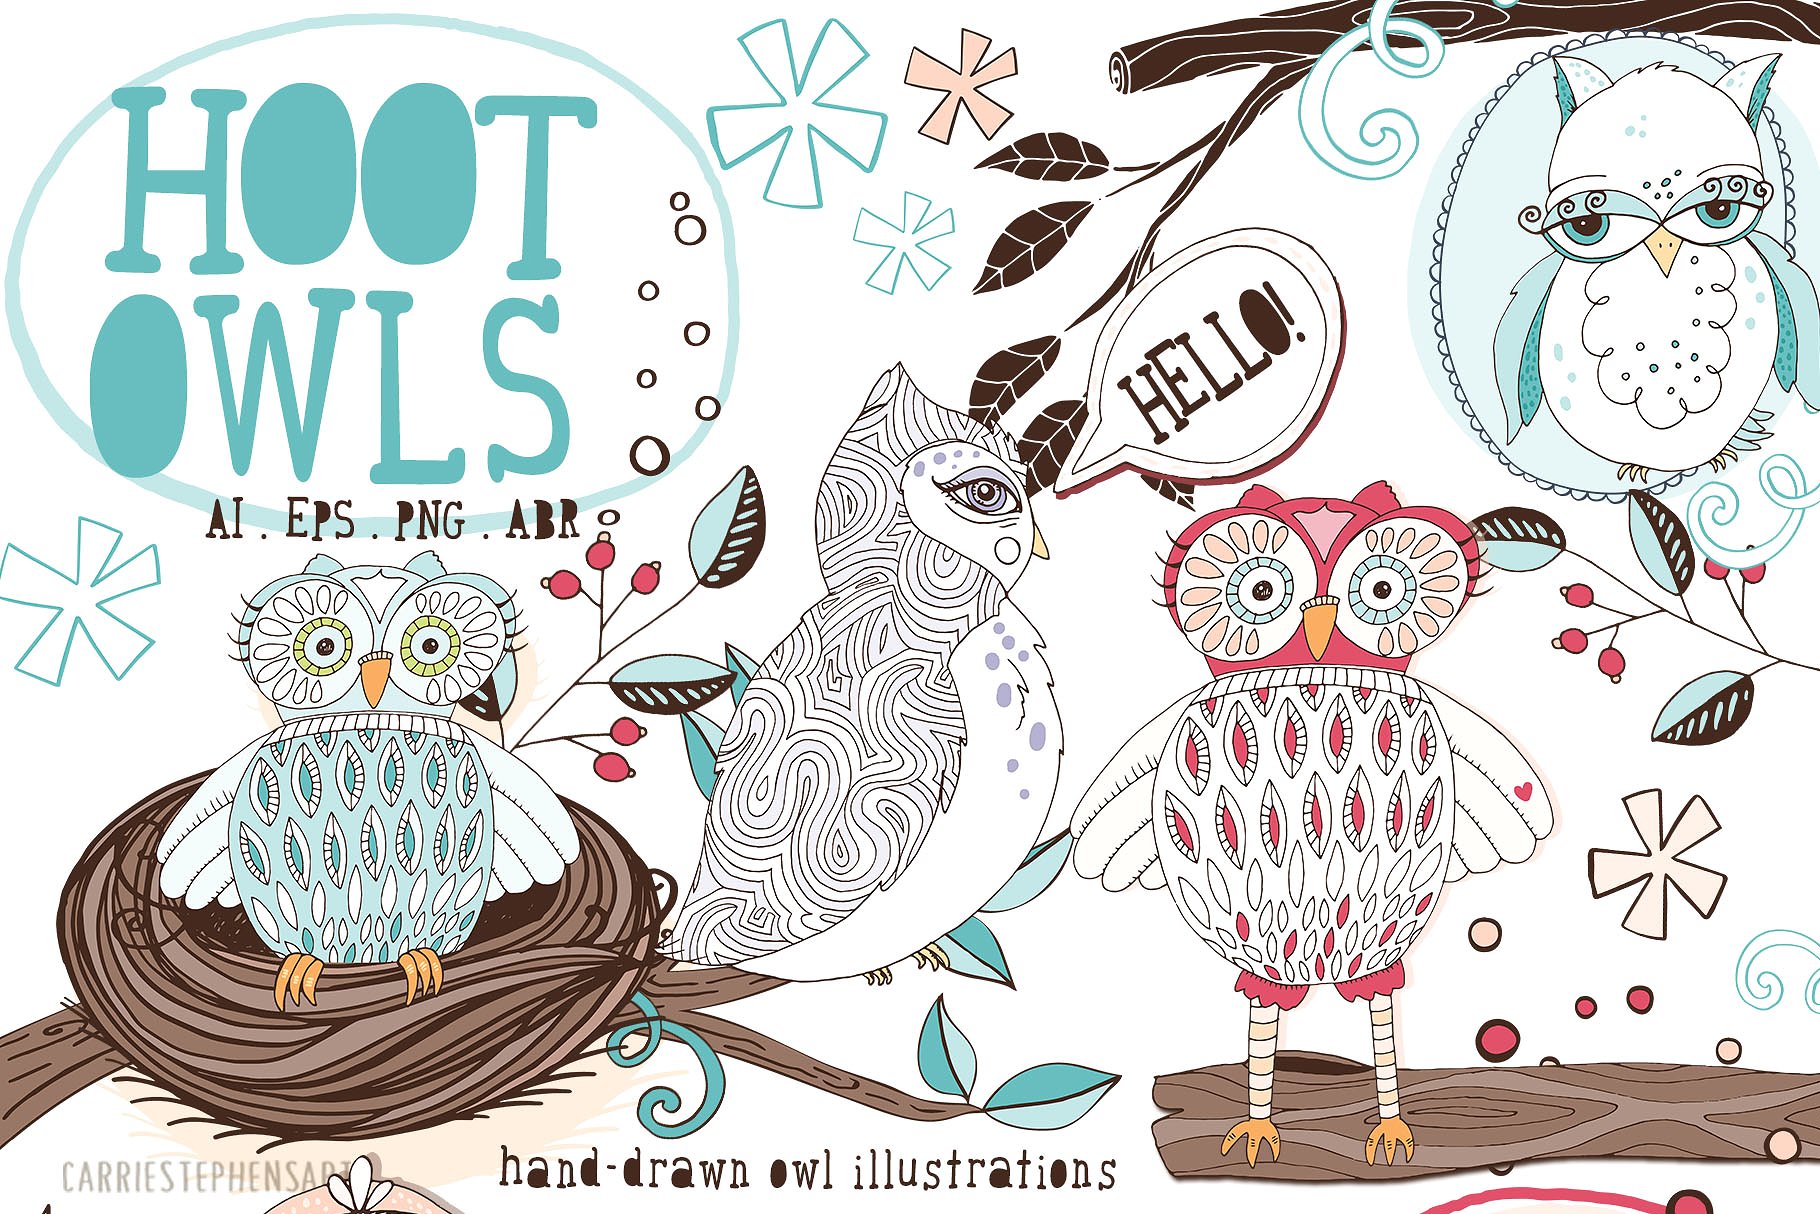 可爱猫头鹰矢量剪切画素材 Cute Owl Graphics Set插图(9)